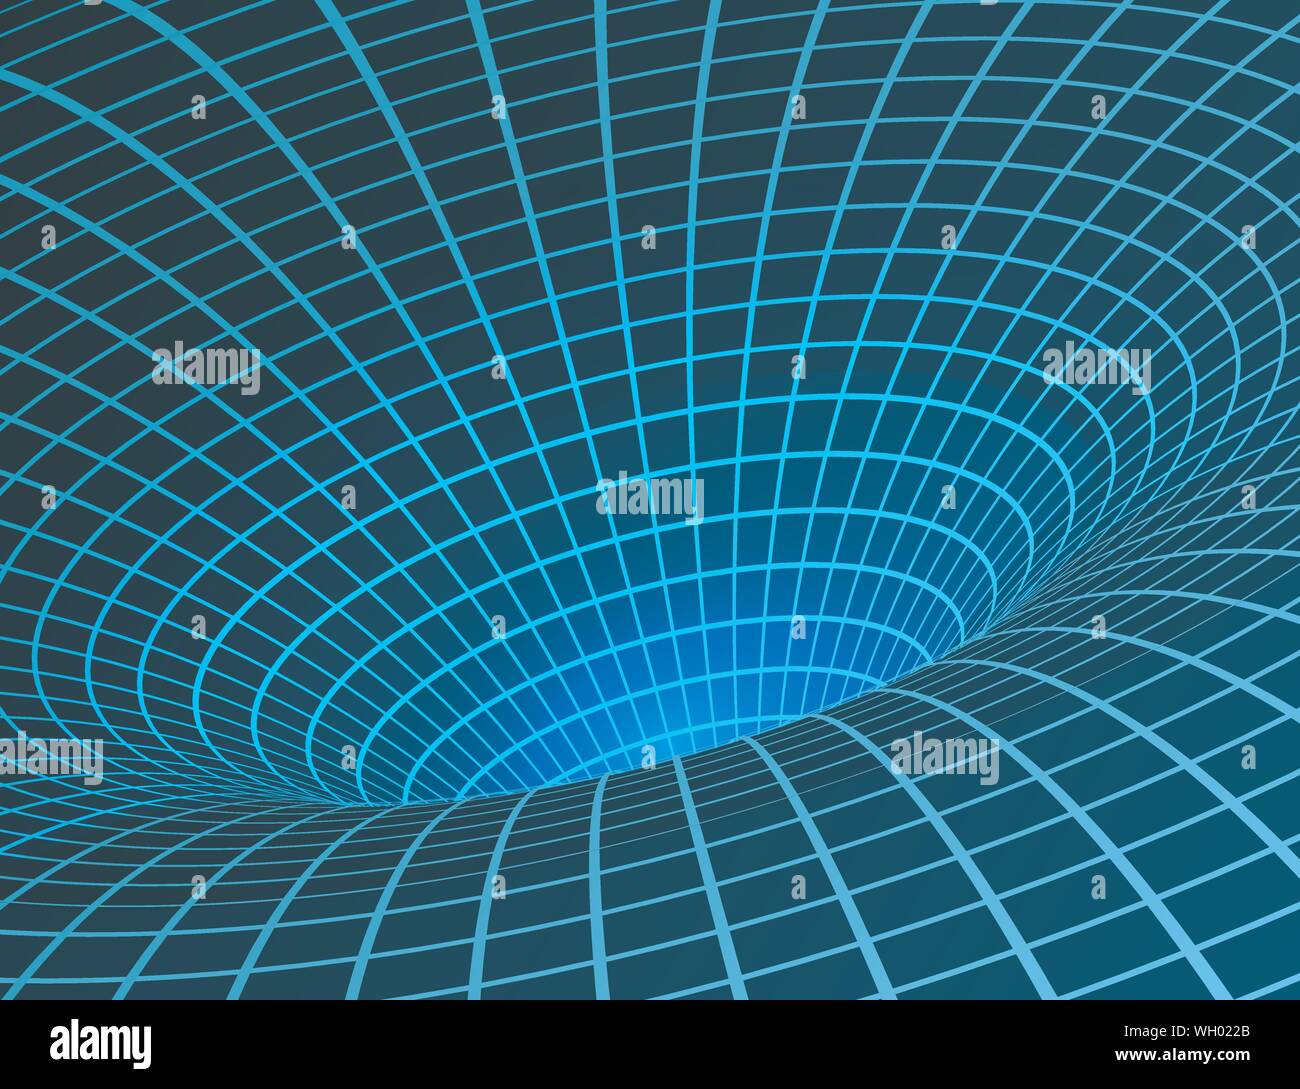 Wurmloch. Singularität und Event Horizon - warp Raum und Zeit. Digitale Visualisierung von Schwarzen Loch. Vector Illustration Stock Vektor